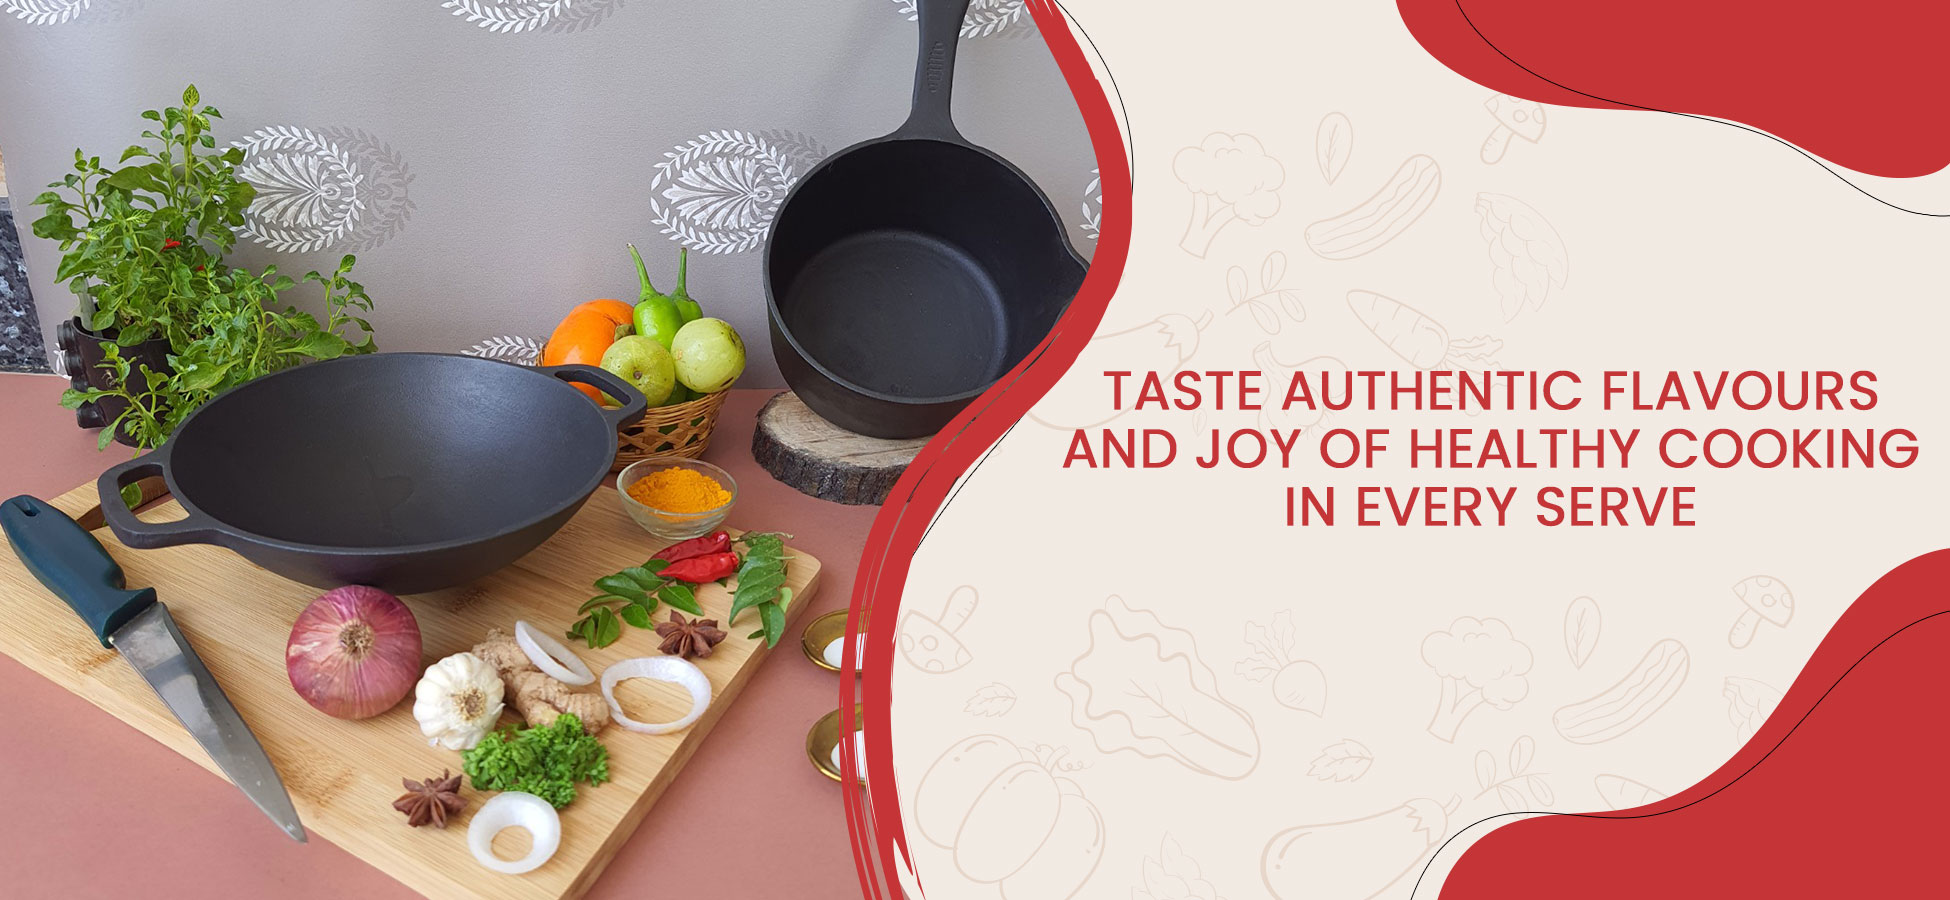 Best Cast Iron Cookware Brand in India - Feroall Cookware